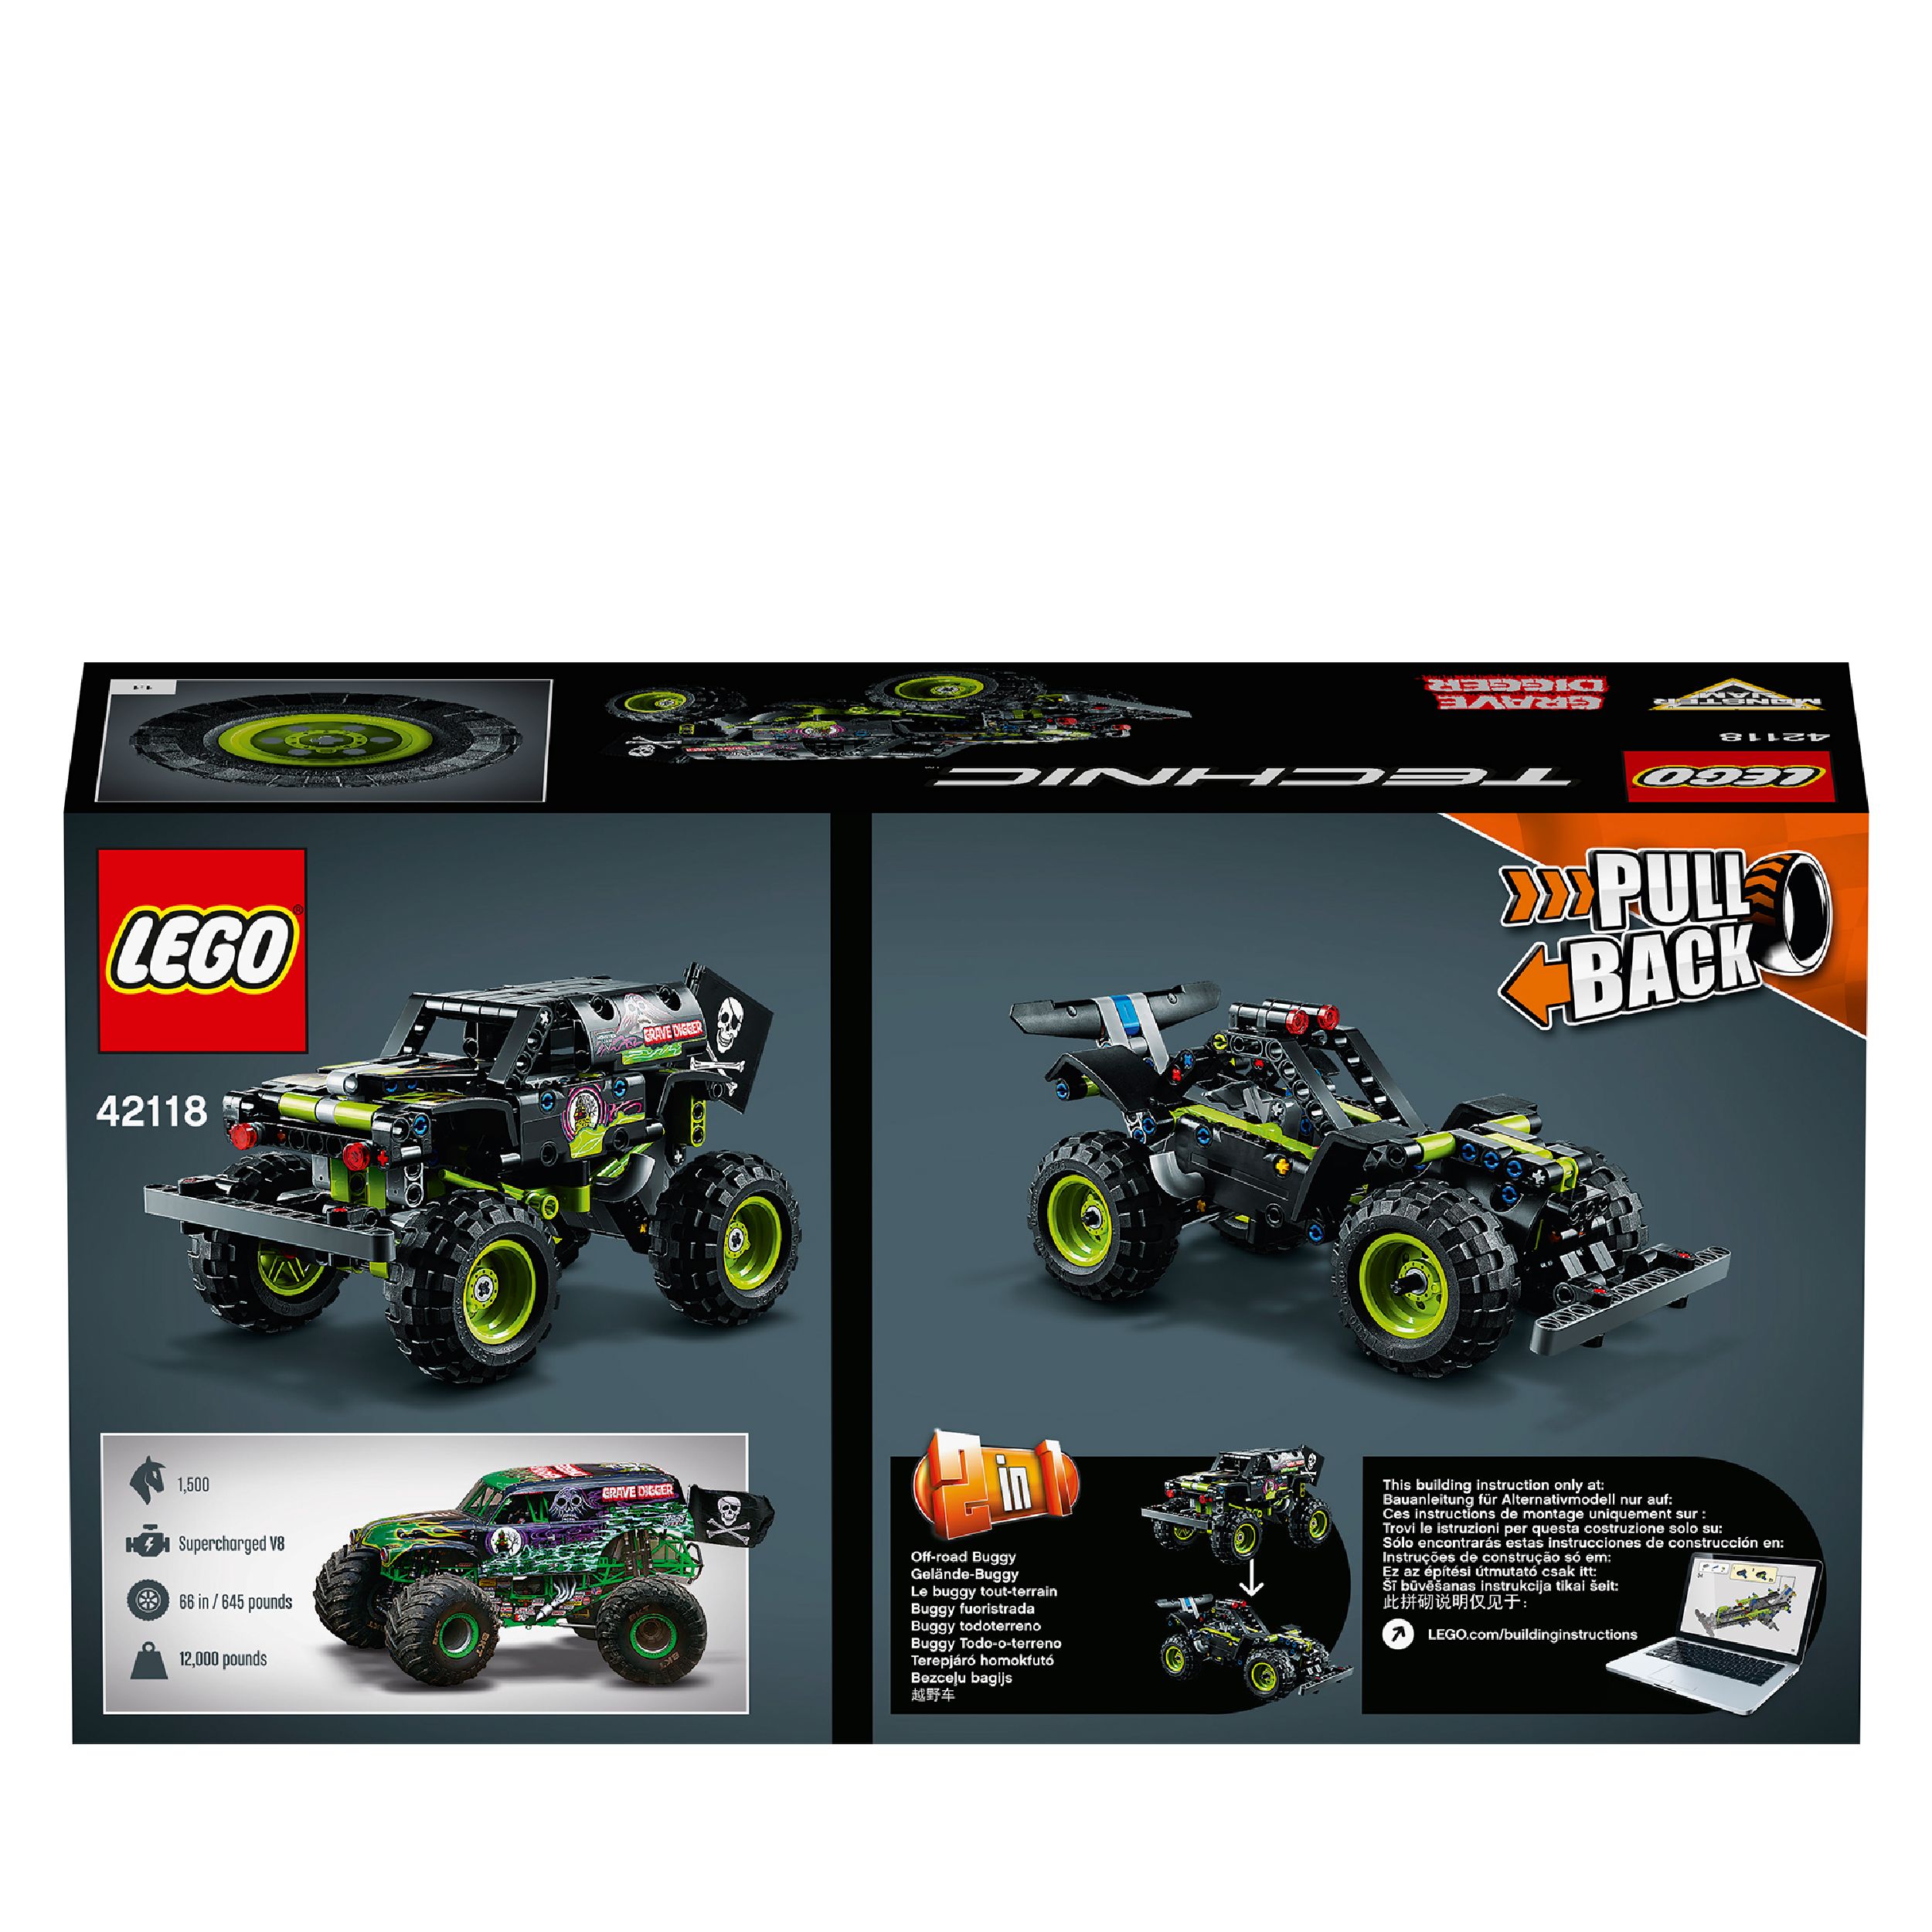 Lego technic 42118 monster jam grave digger, kit 2 in 1 da truck a buggy fuoristrada con azione pull-back, giochi per bambini - LEGO TECHNIC, Lego